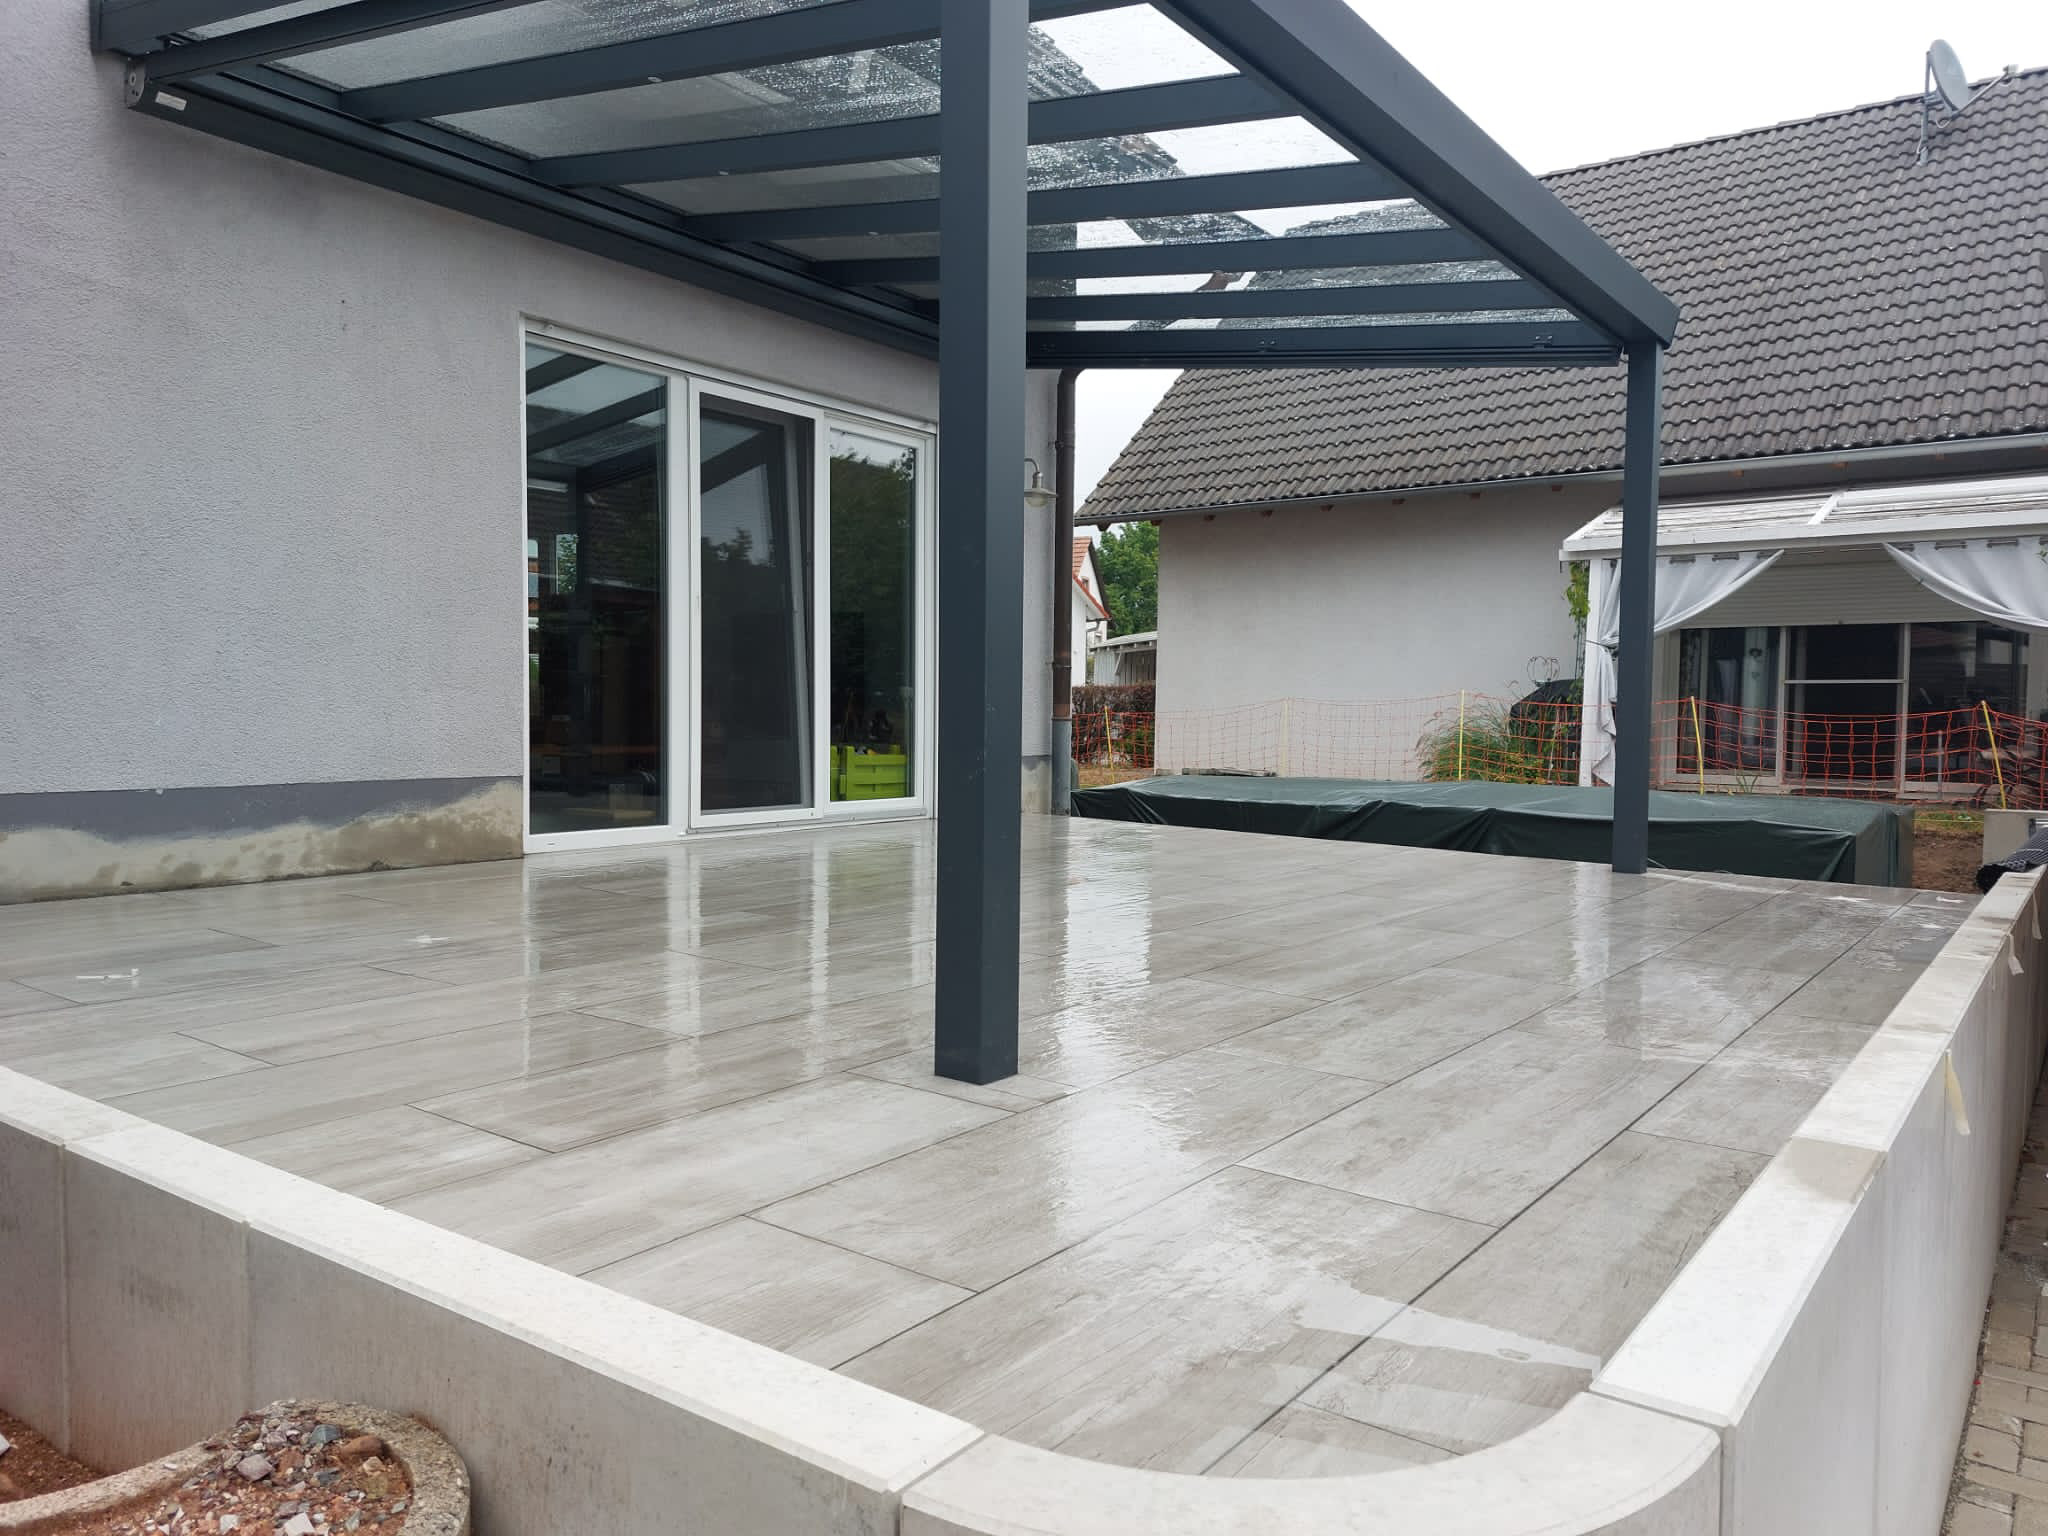 Terrassengestaltung. Terrasse neu gestalten mit Unterbau und Keramikplatten verlegt